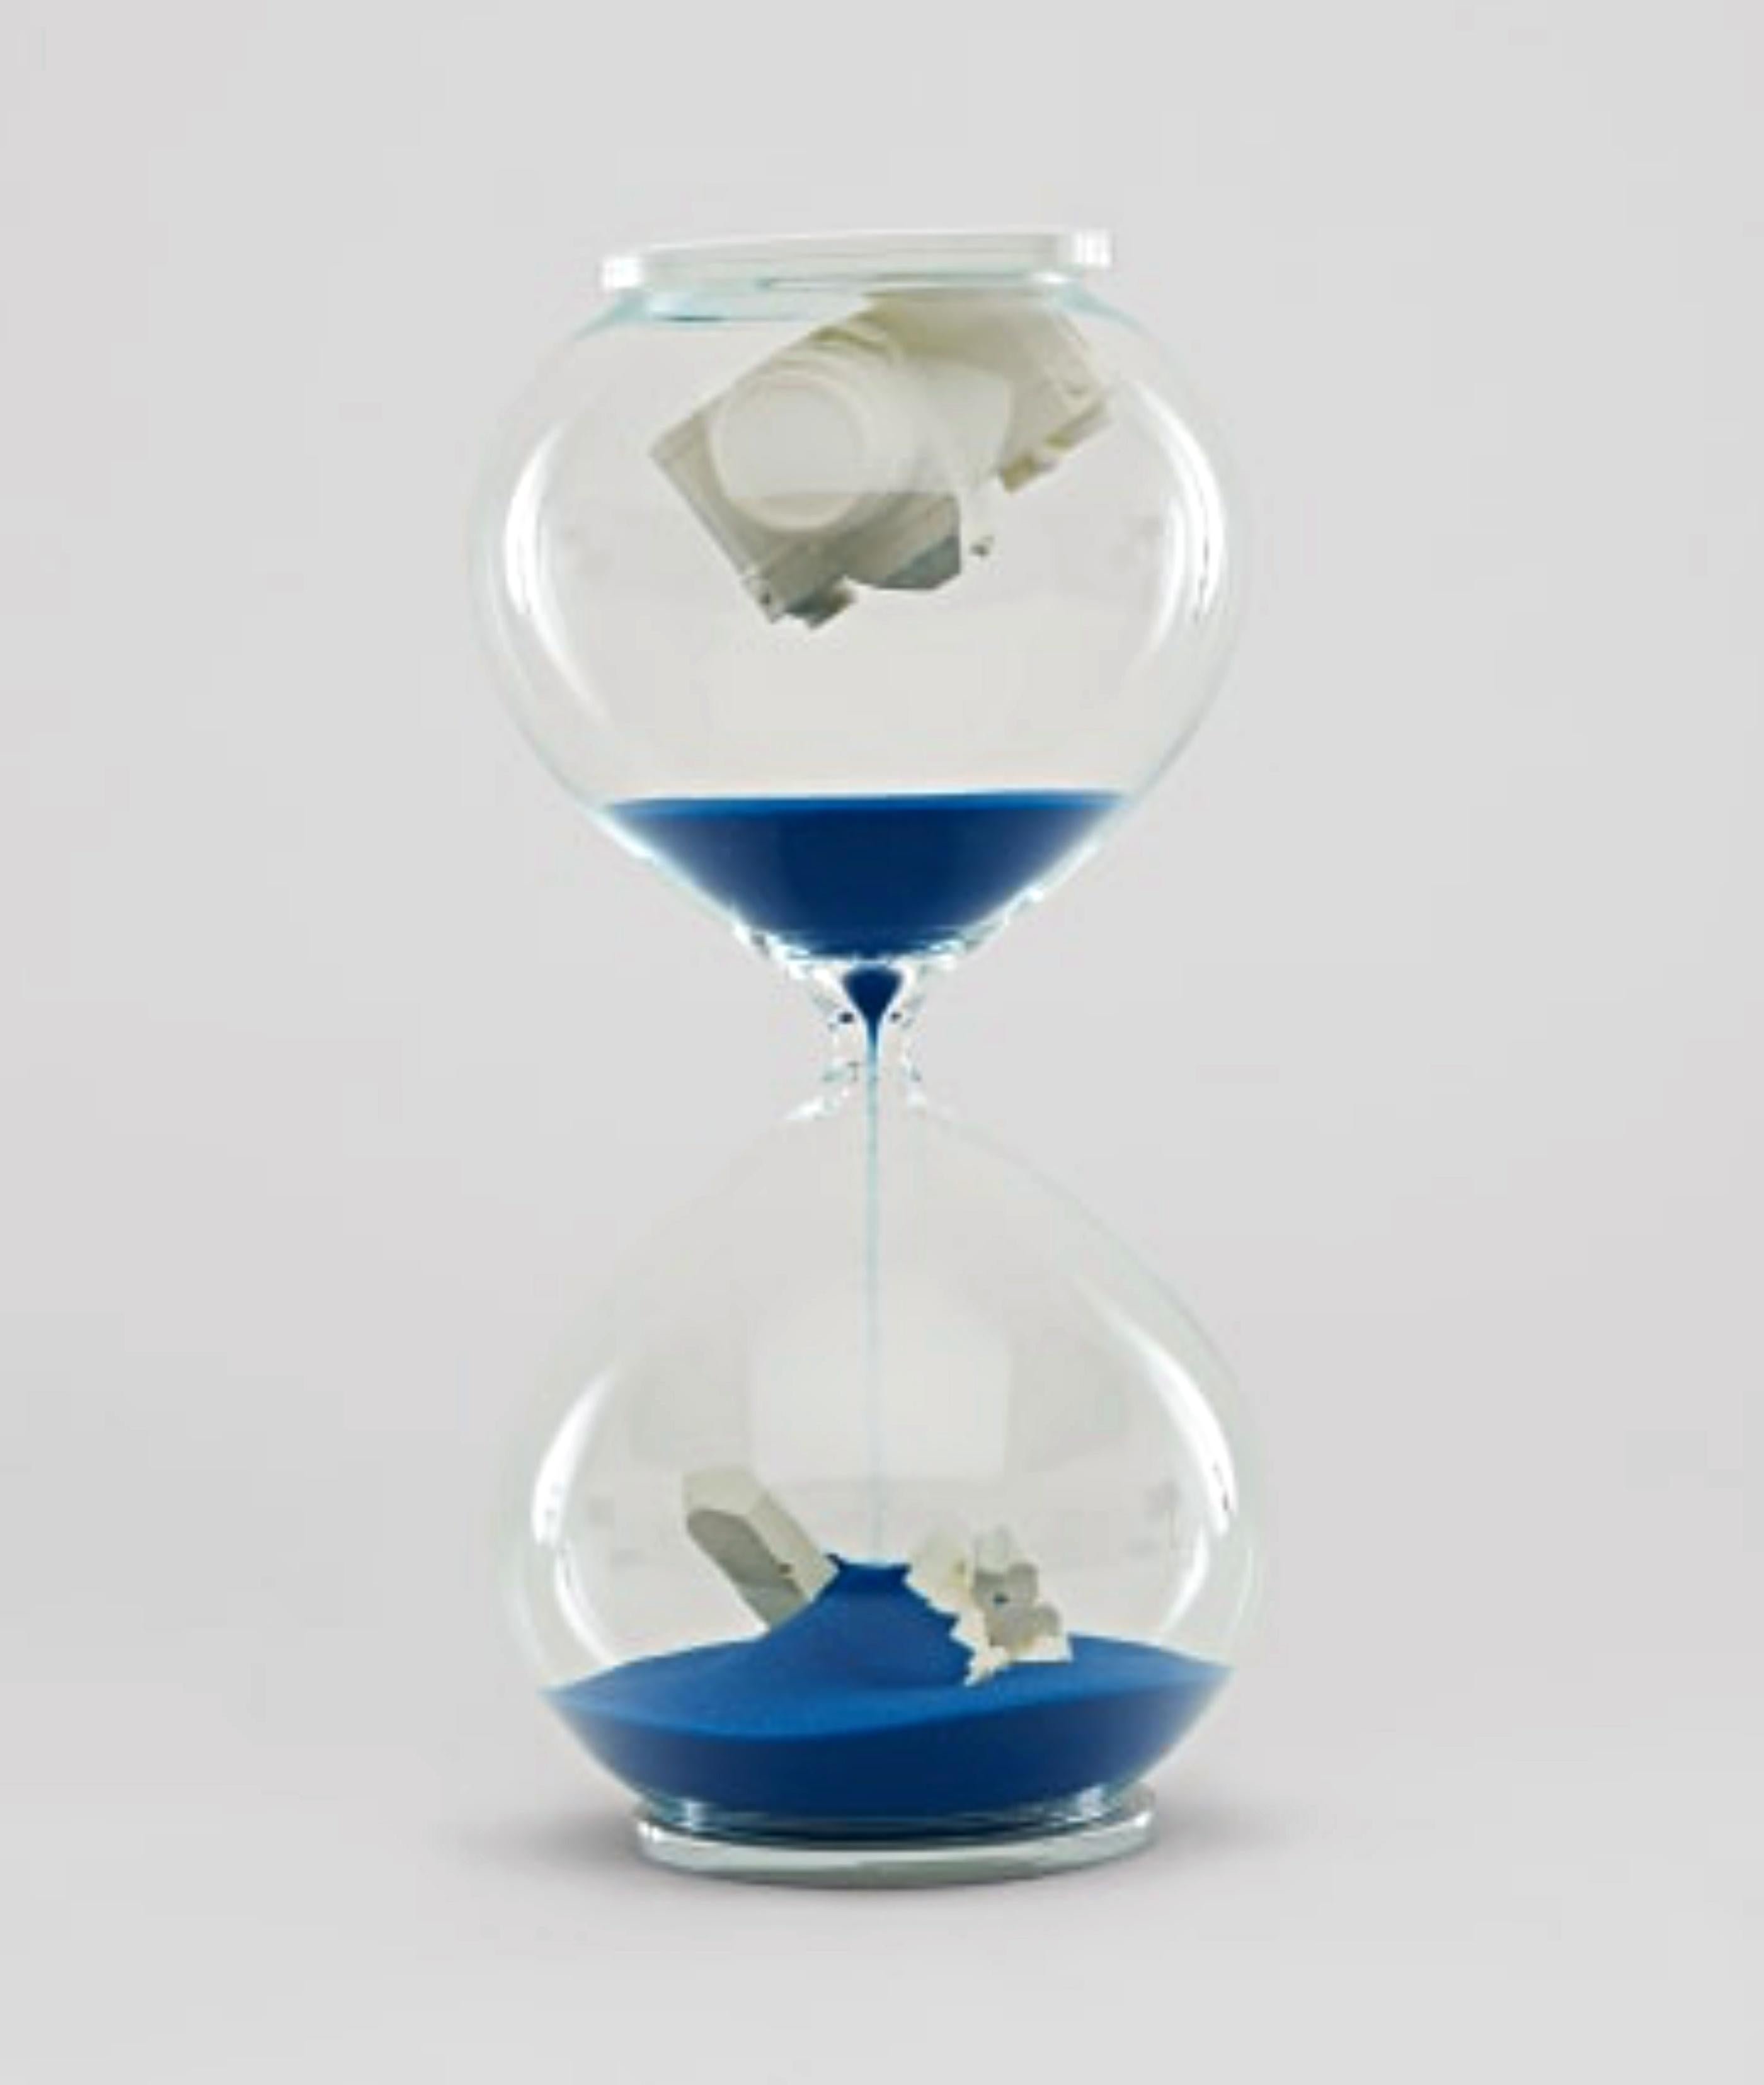 Hourglass (bleu) : sculpture en verre, appareil photo coulé et cristal de quartz, neuf dans sa boîte - Contemporain Sculpture par Daniel Arsham